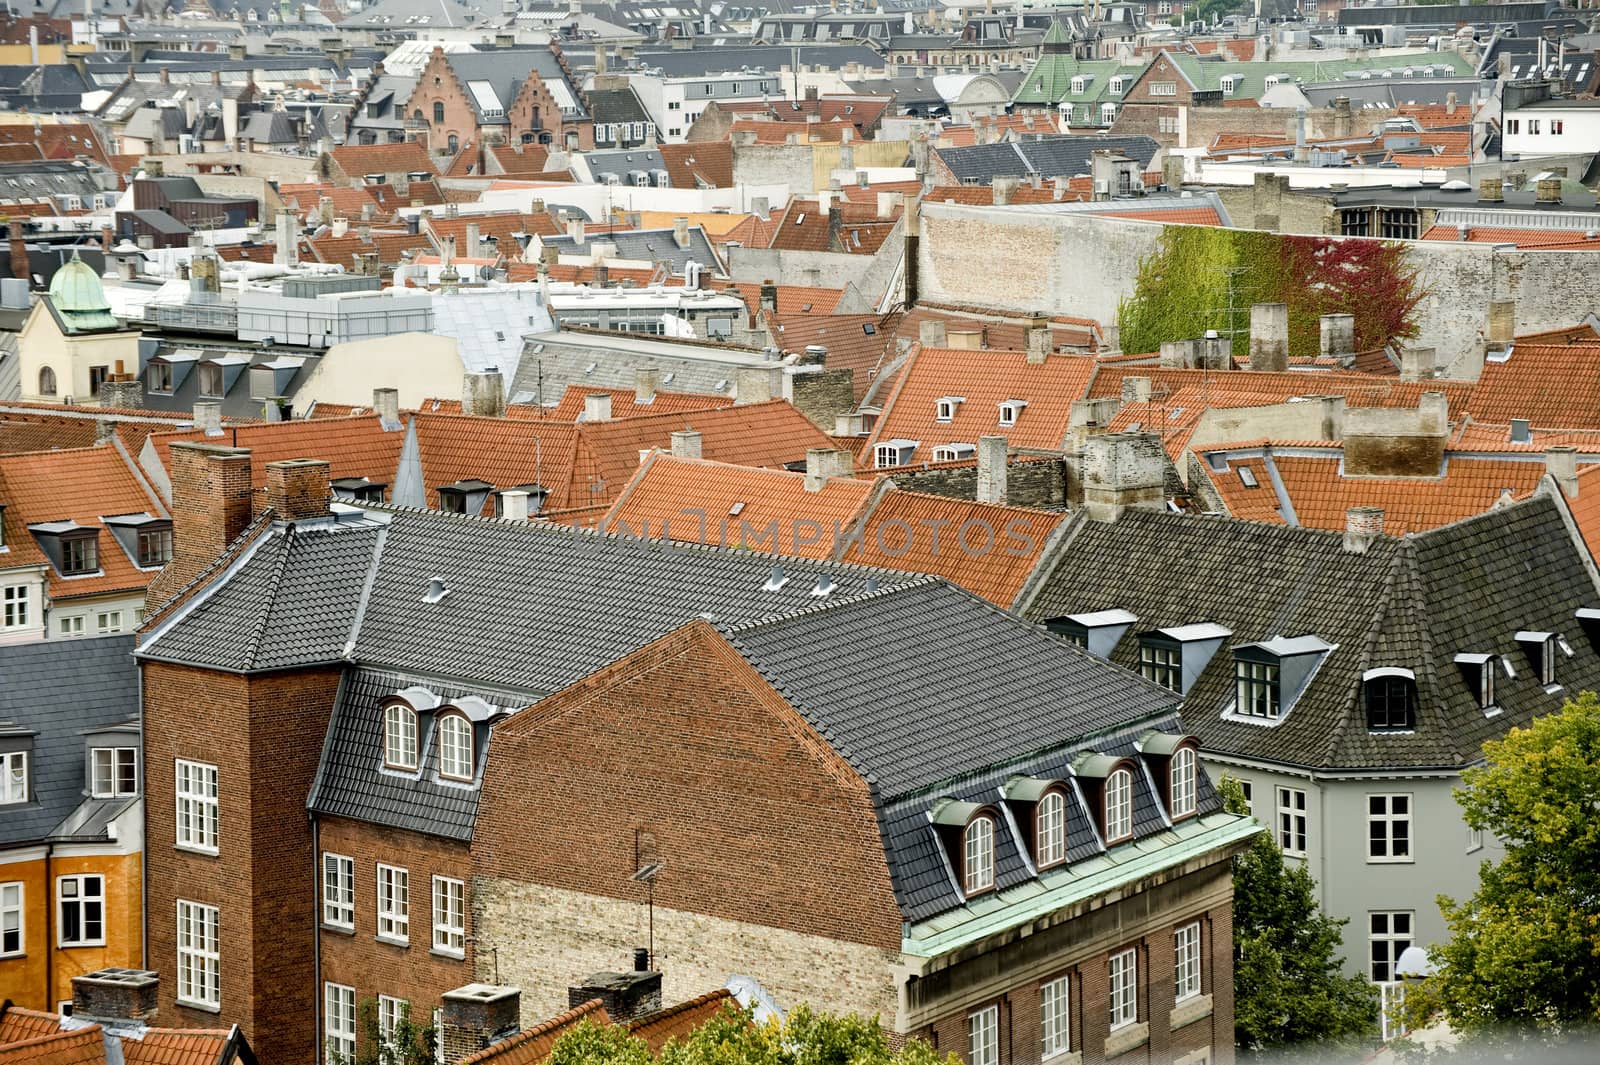 Copenhagen roofs by Alenmax